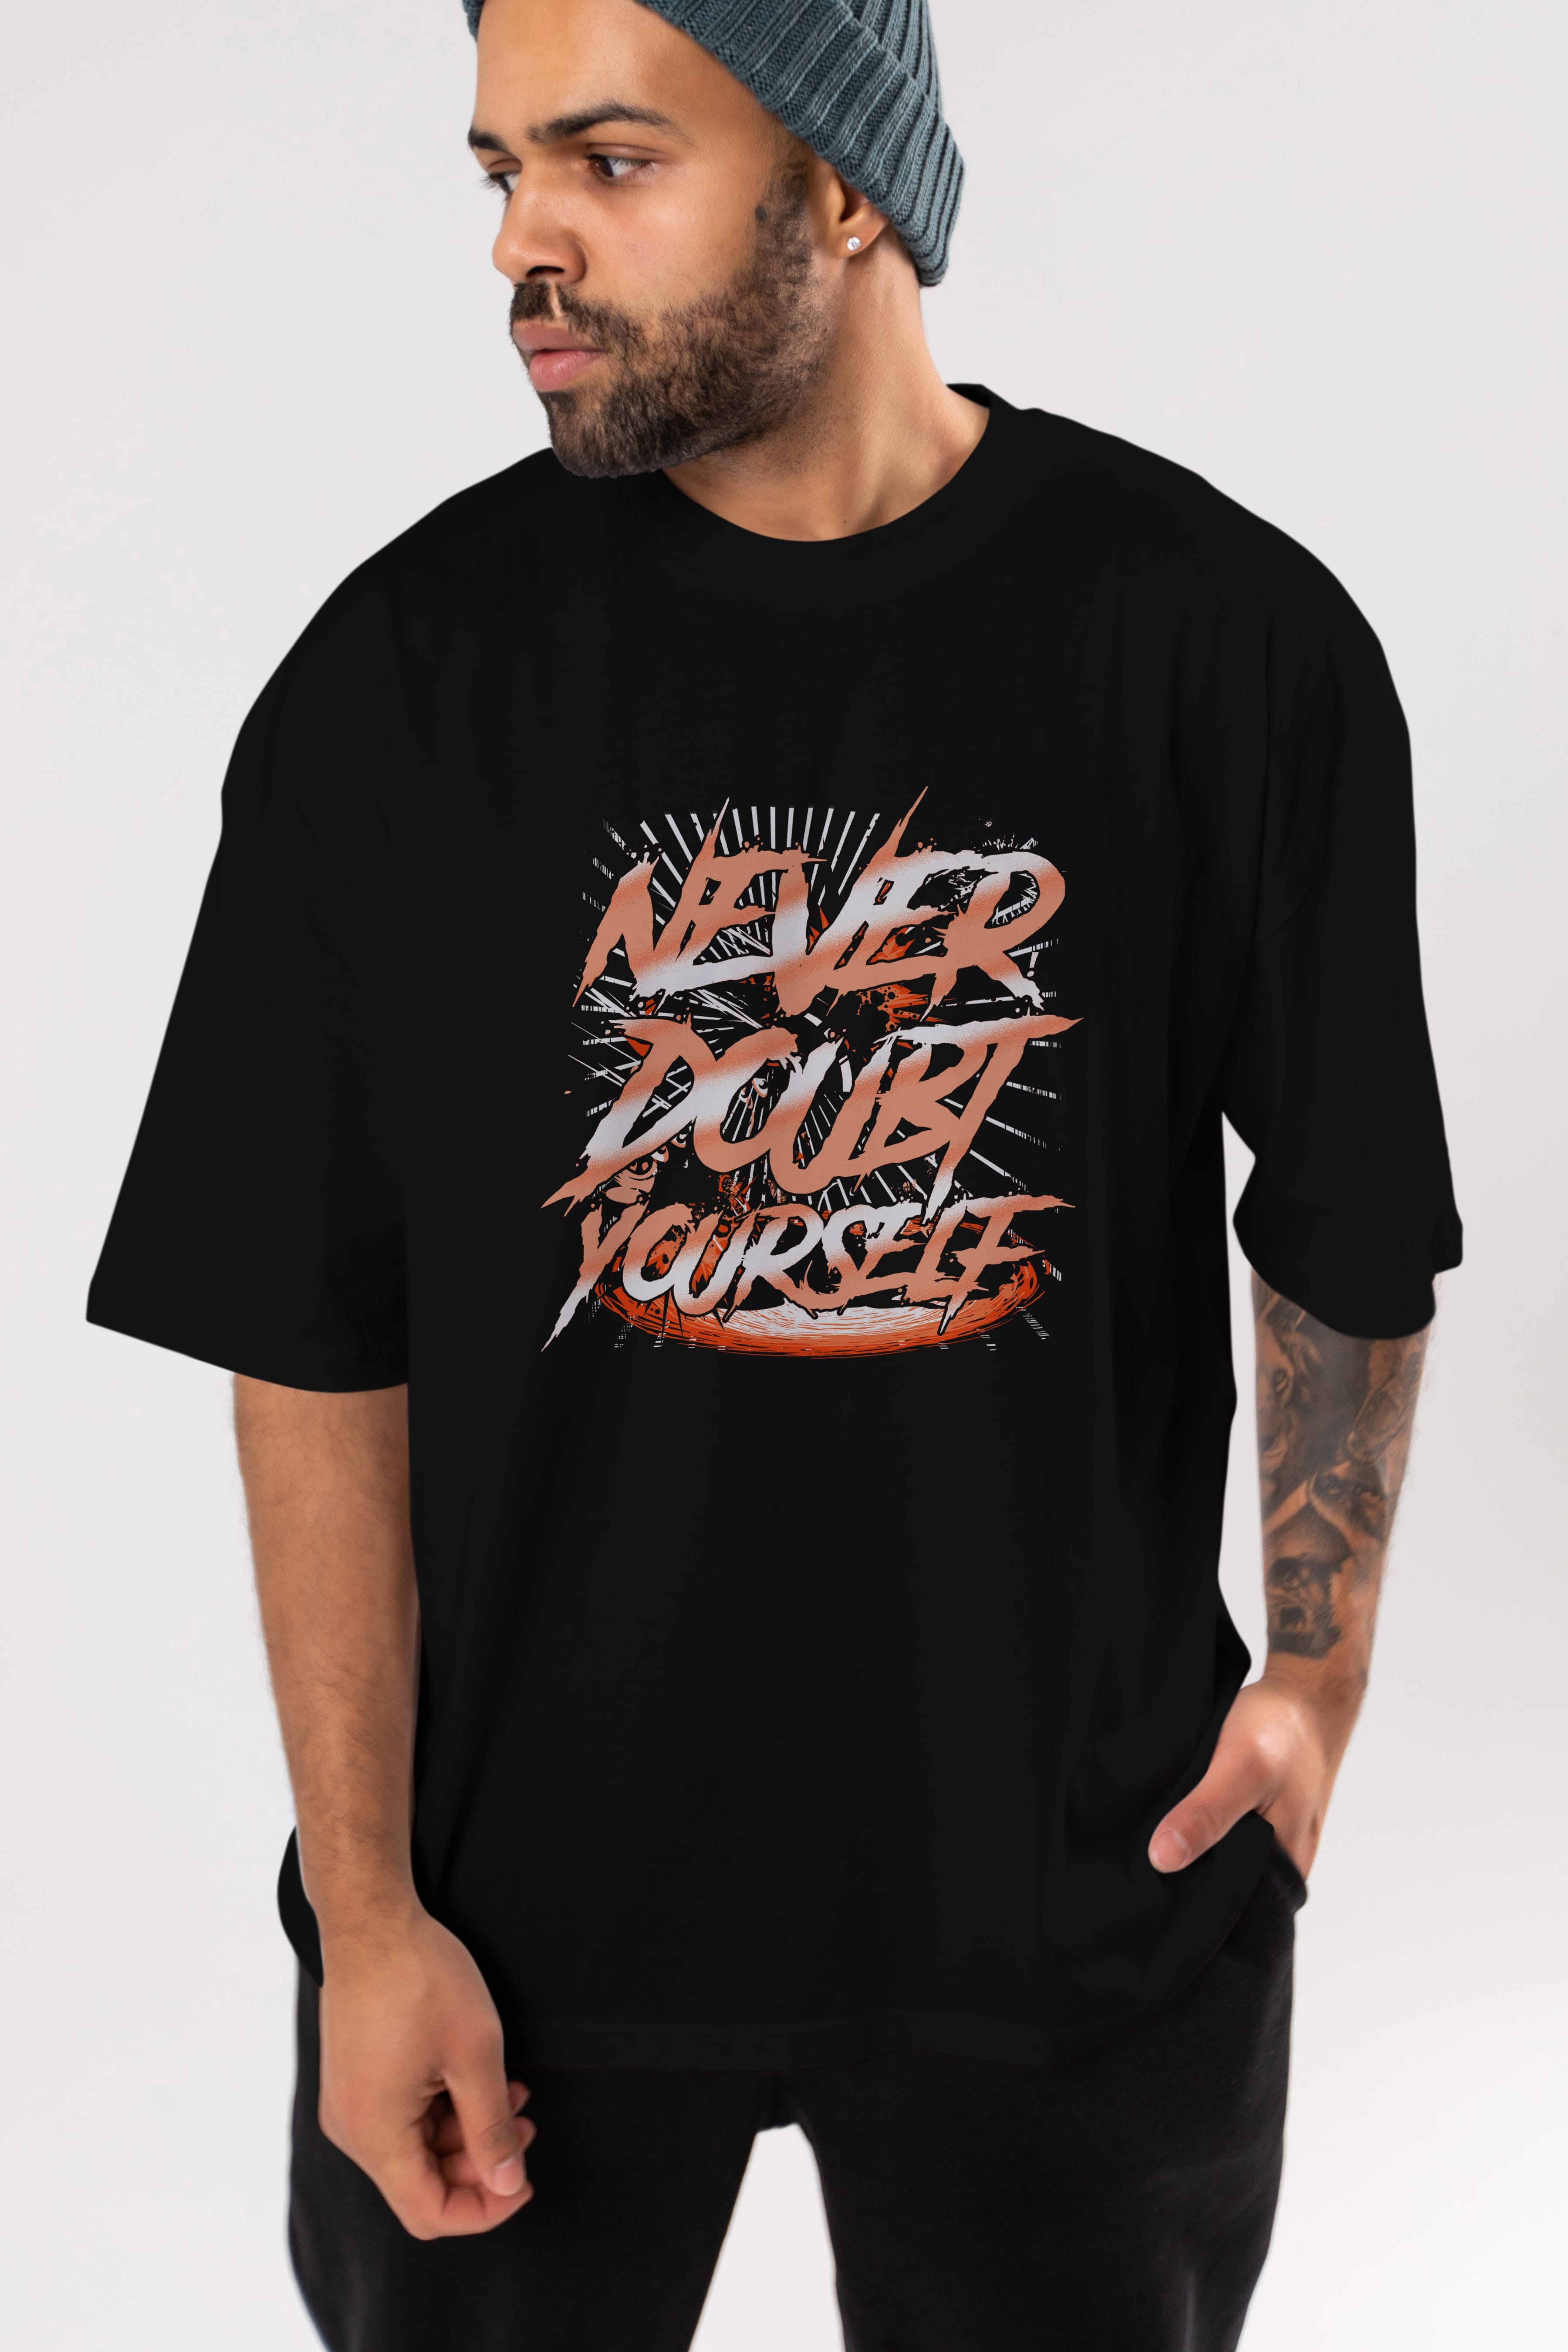 Never Doubt Yourself Ön Baskılı Oversize t-shirt Erkek Kadın Unisex